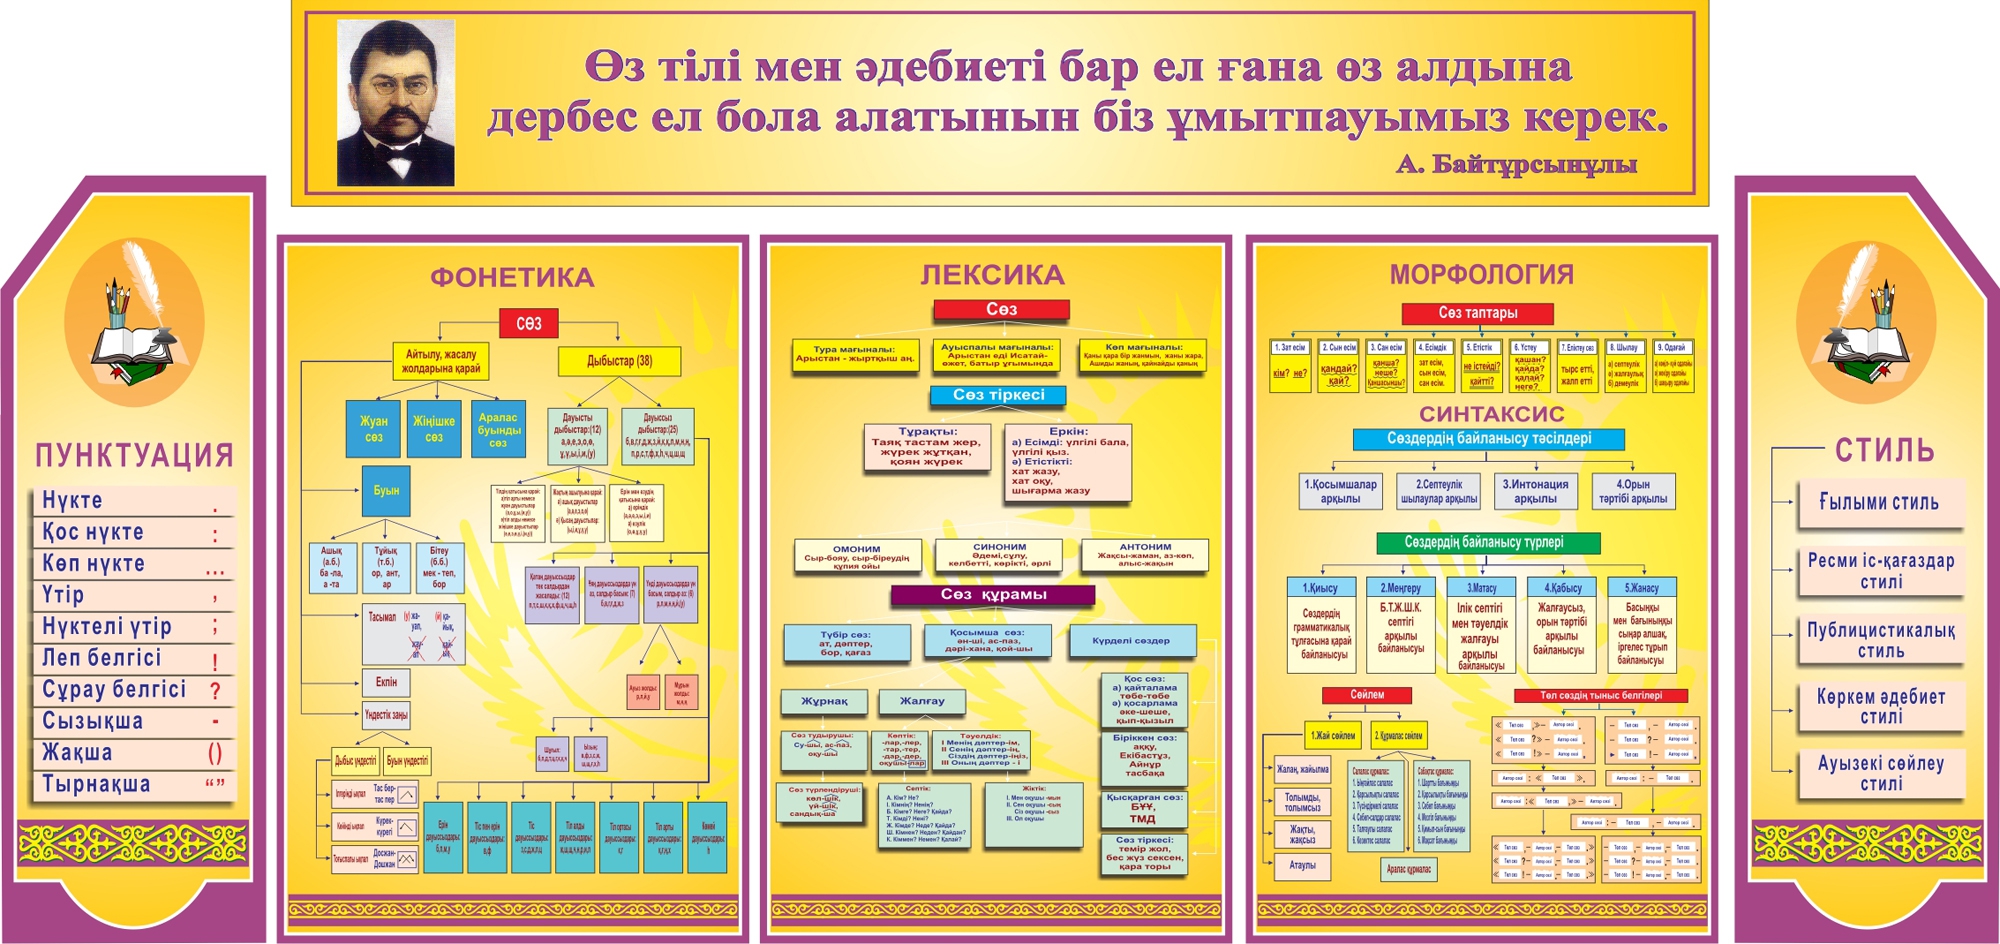 члены перевод на казахский язык фото 56